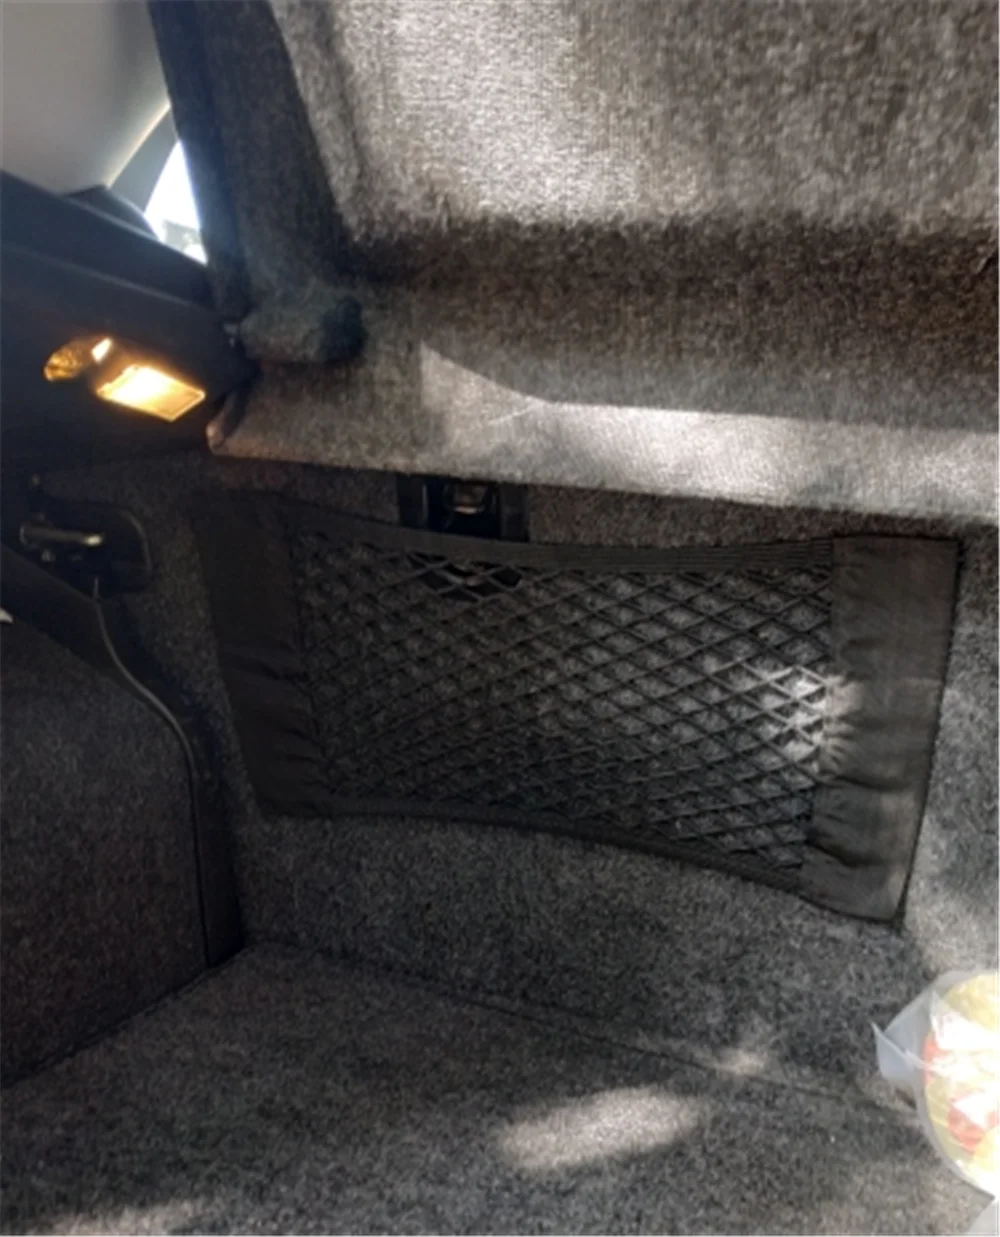 40 см* 25 см авто багажник коробка сумка для хранения Сетка автомобиля аксессуары для Mercedes Benz GLS63 GLS GLE43 B55 стрельба S400 ML450